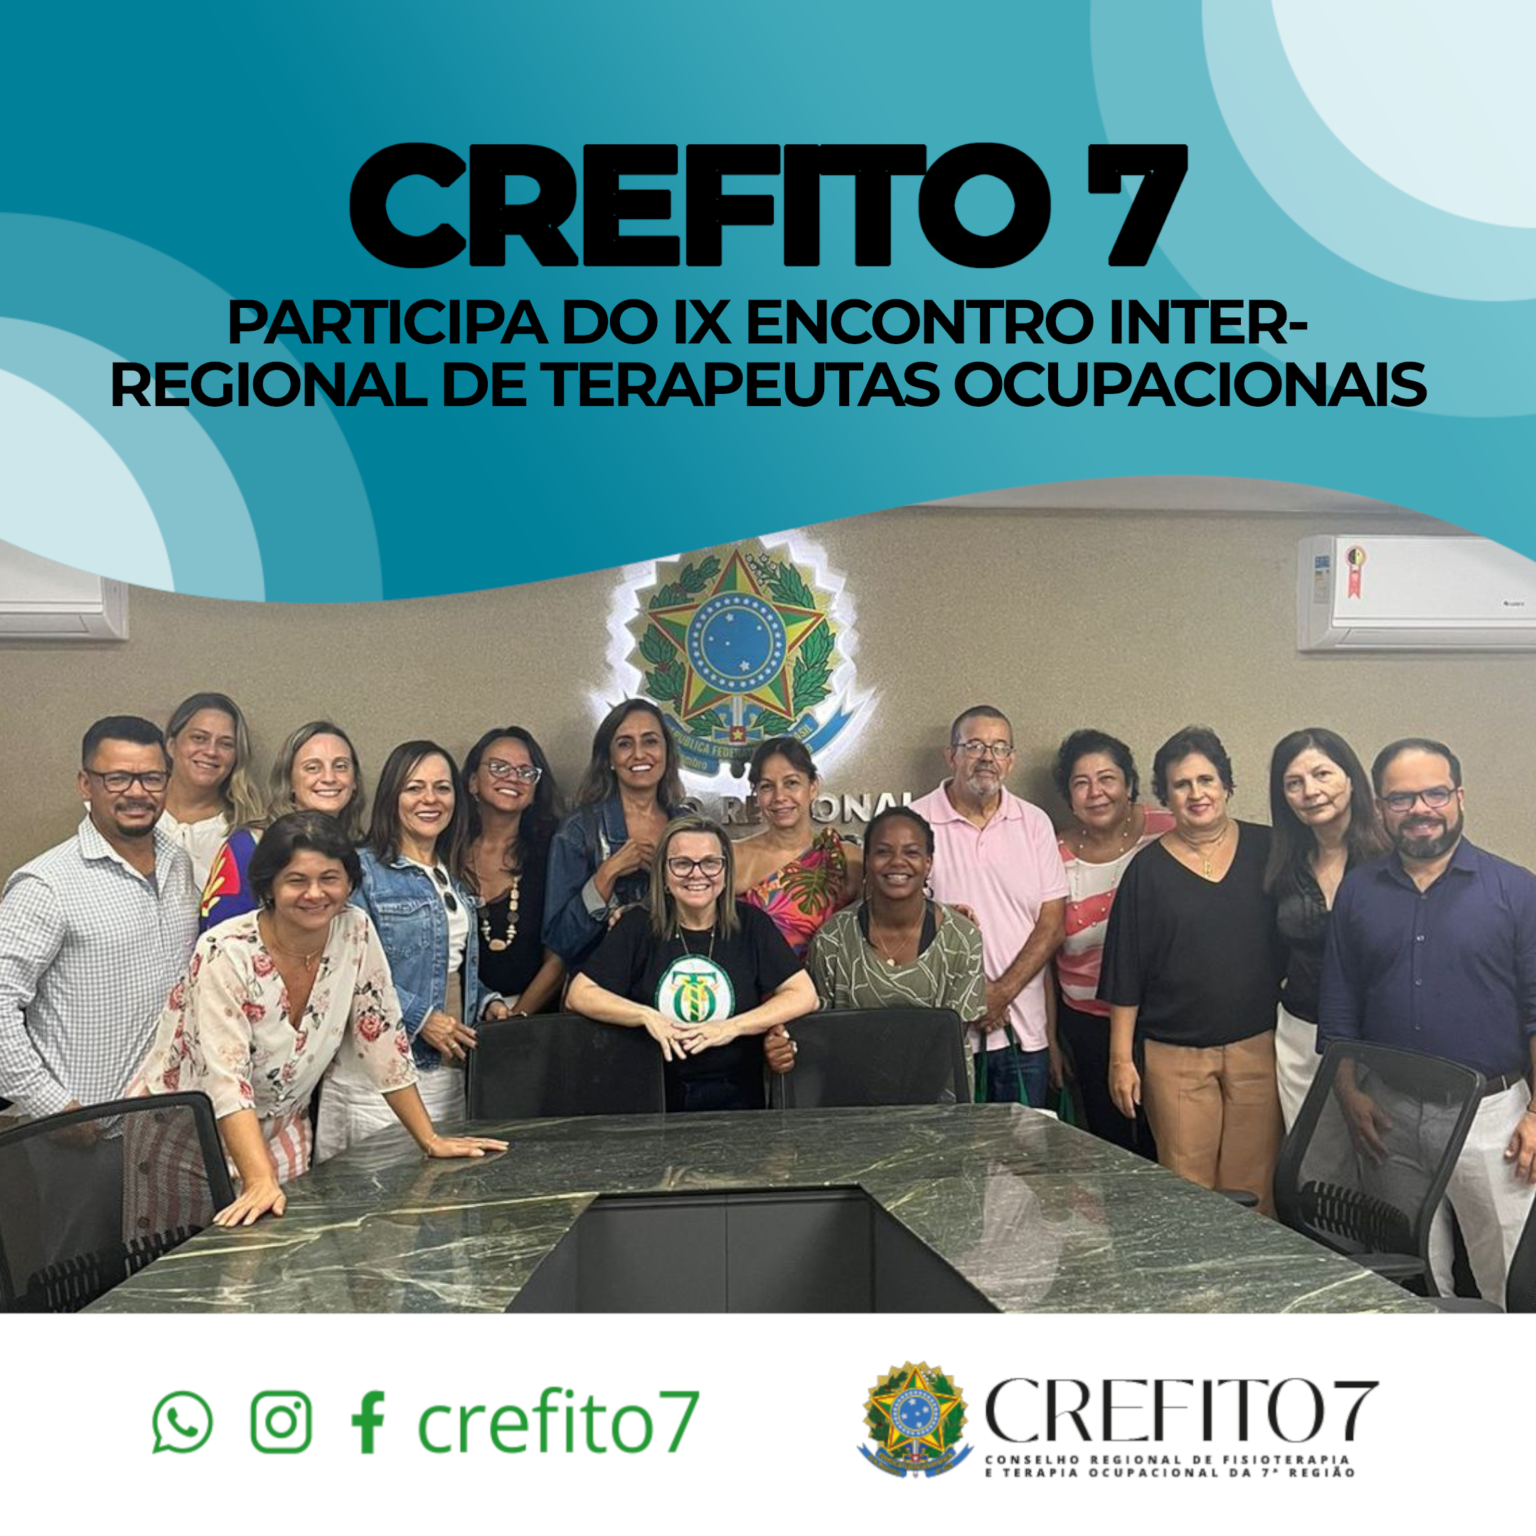 CREFITO-7 PARTICIPA DO IX ENCONTRO INTER-REGIONAL DE TERAPEUTAS OCUPACIONAIS